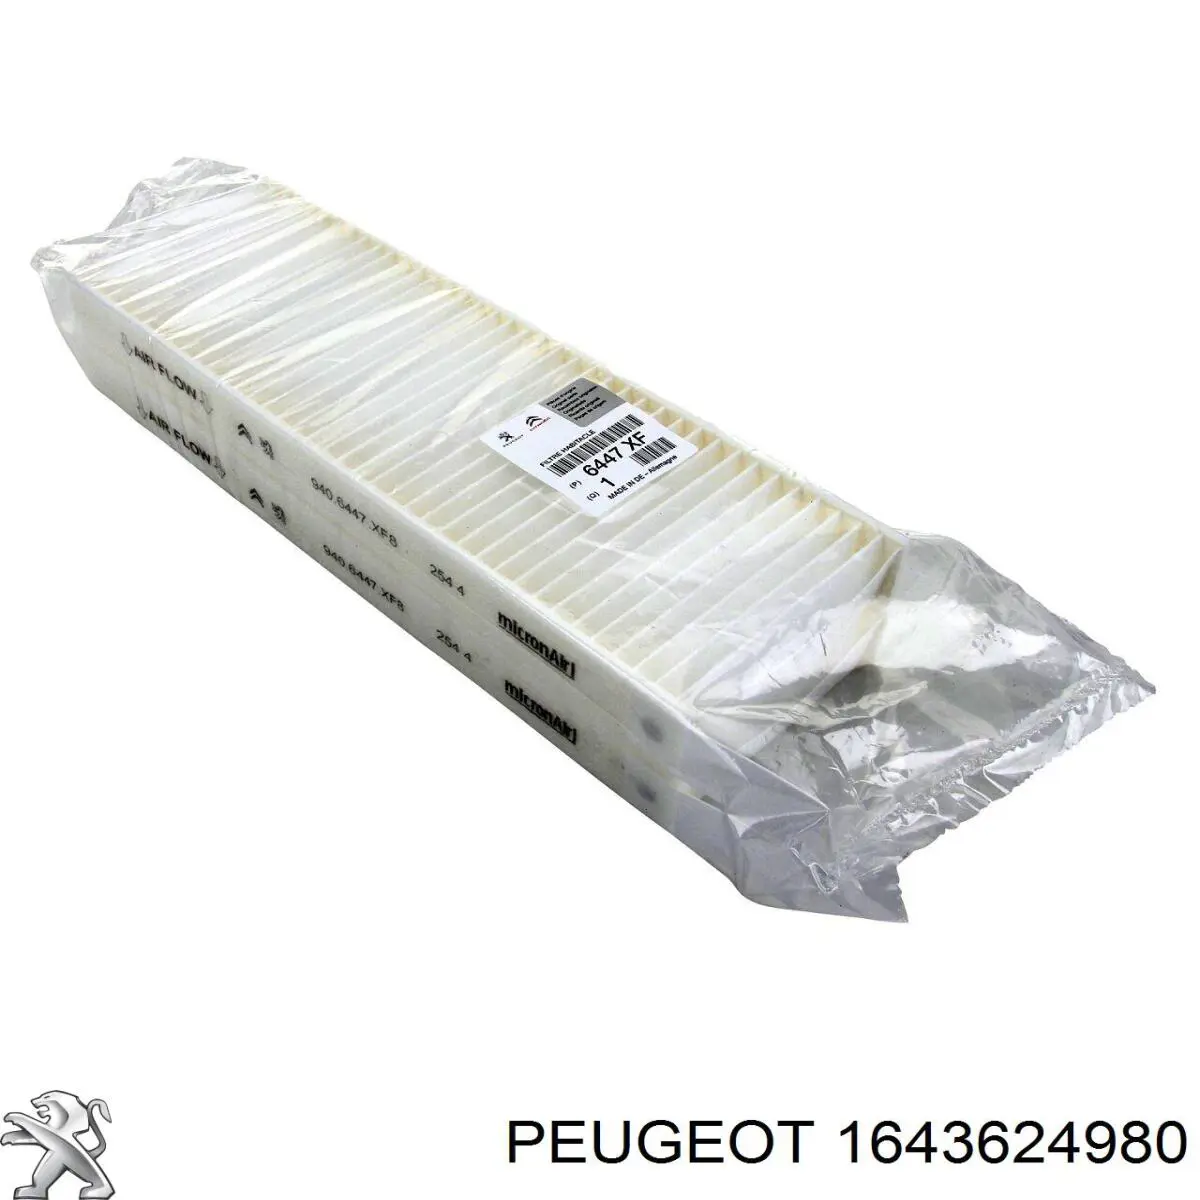 1643624980 Peugeot/Citroen filtro combustible